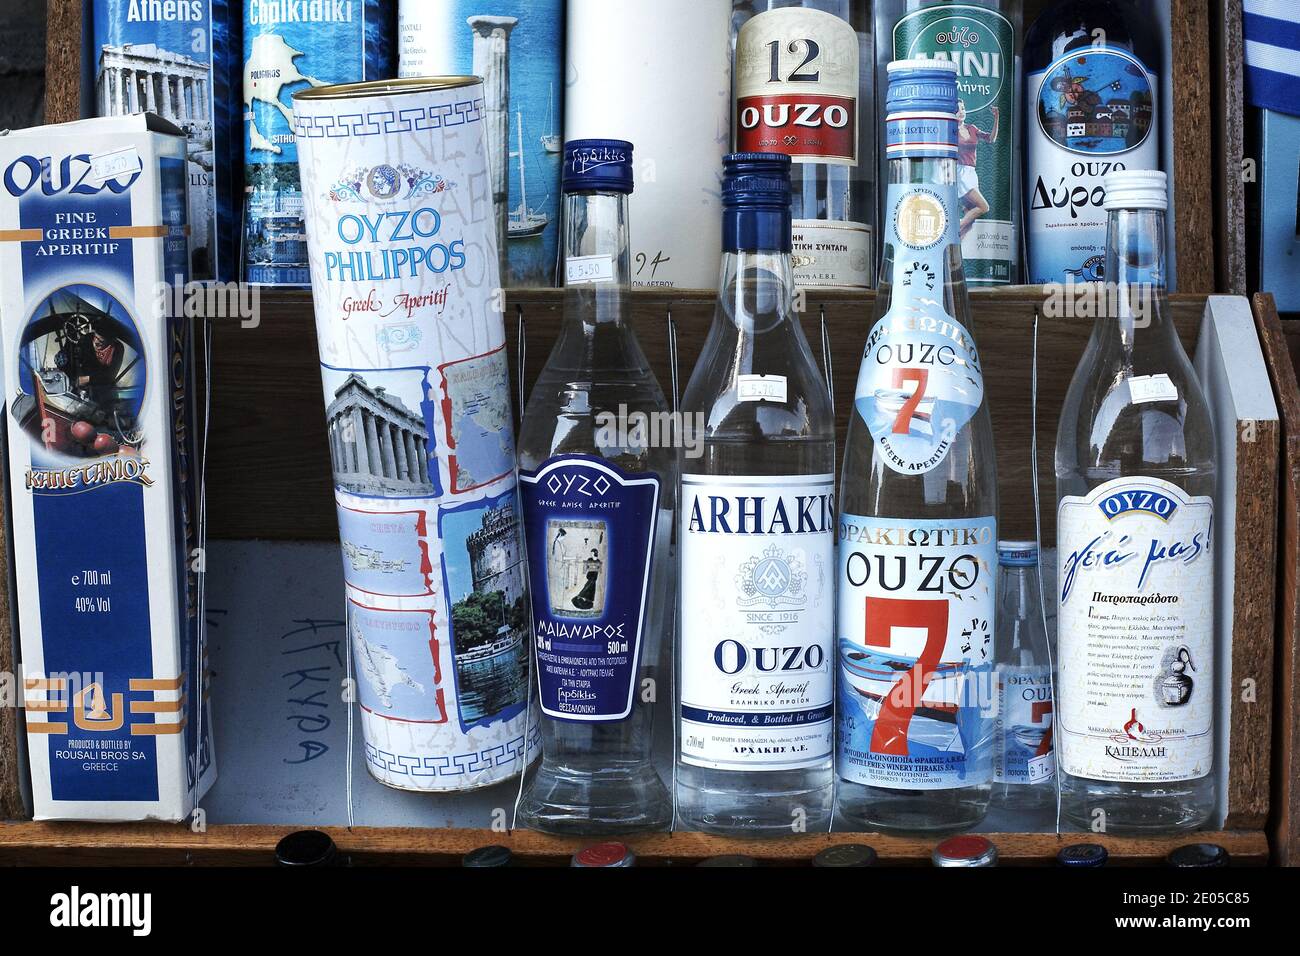 Alcohol drink greece immagini e fotografie stock ad alta risoluzione - Alamy